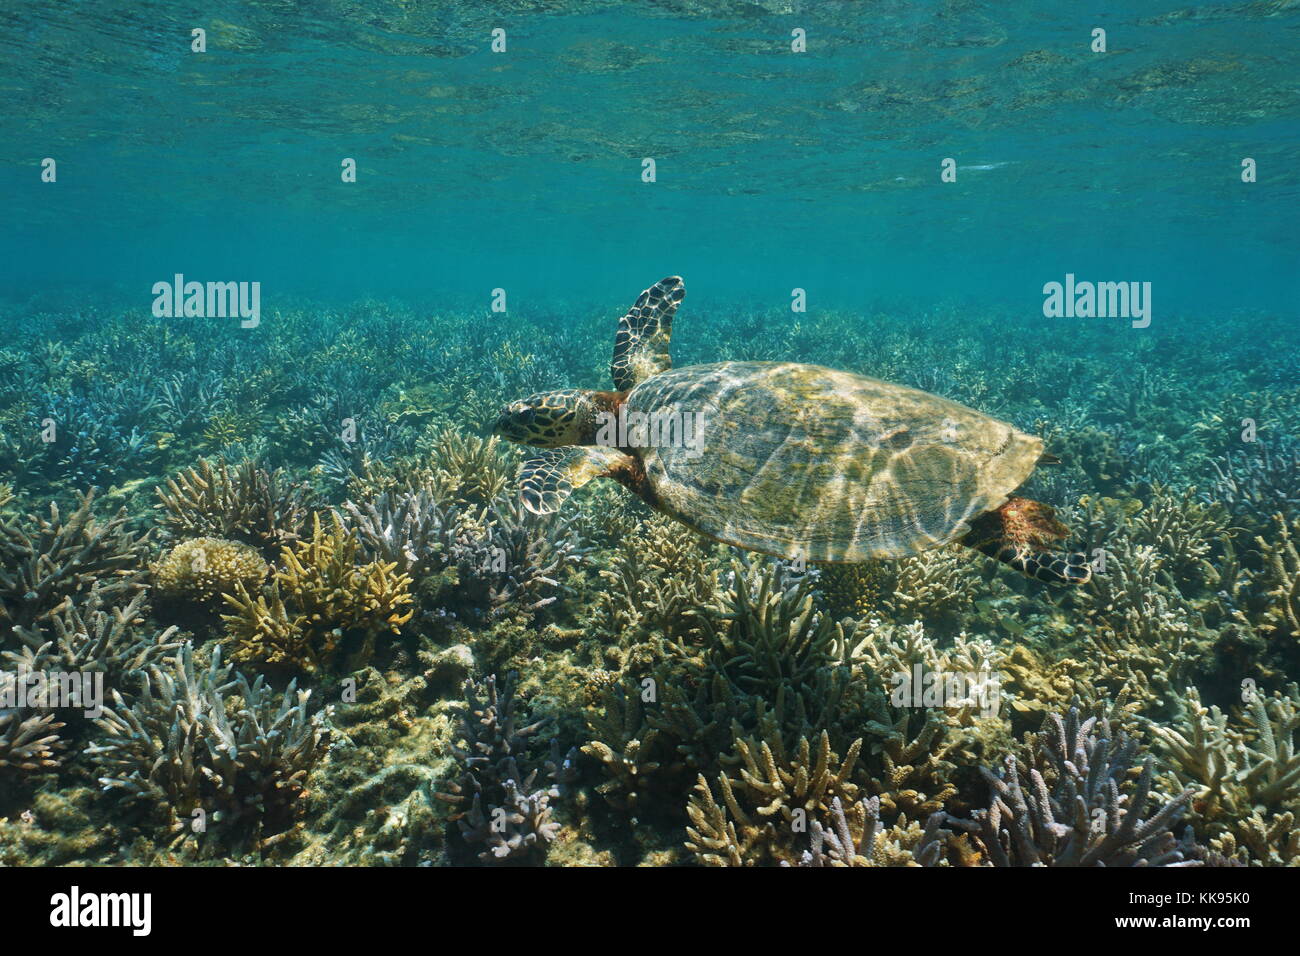 Una tortuga carey Eretmochelys imbricata, submarino en un arrecife de coral, poco profundas del océano Pacífico Sur, Nueva Caledonia, en Oceanía Foto de stock